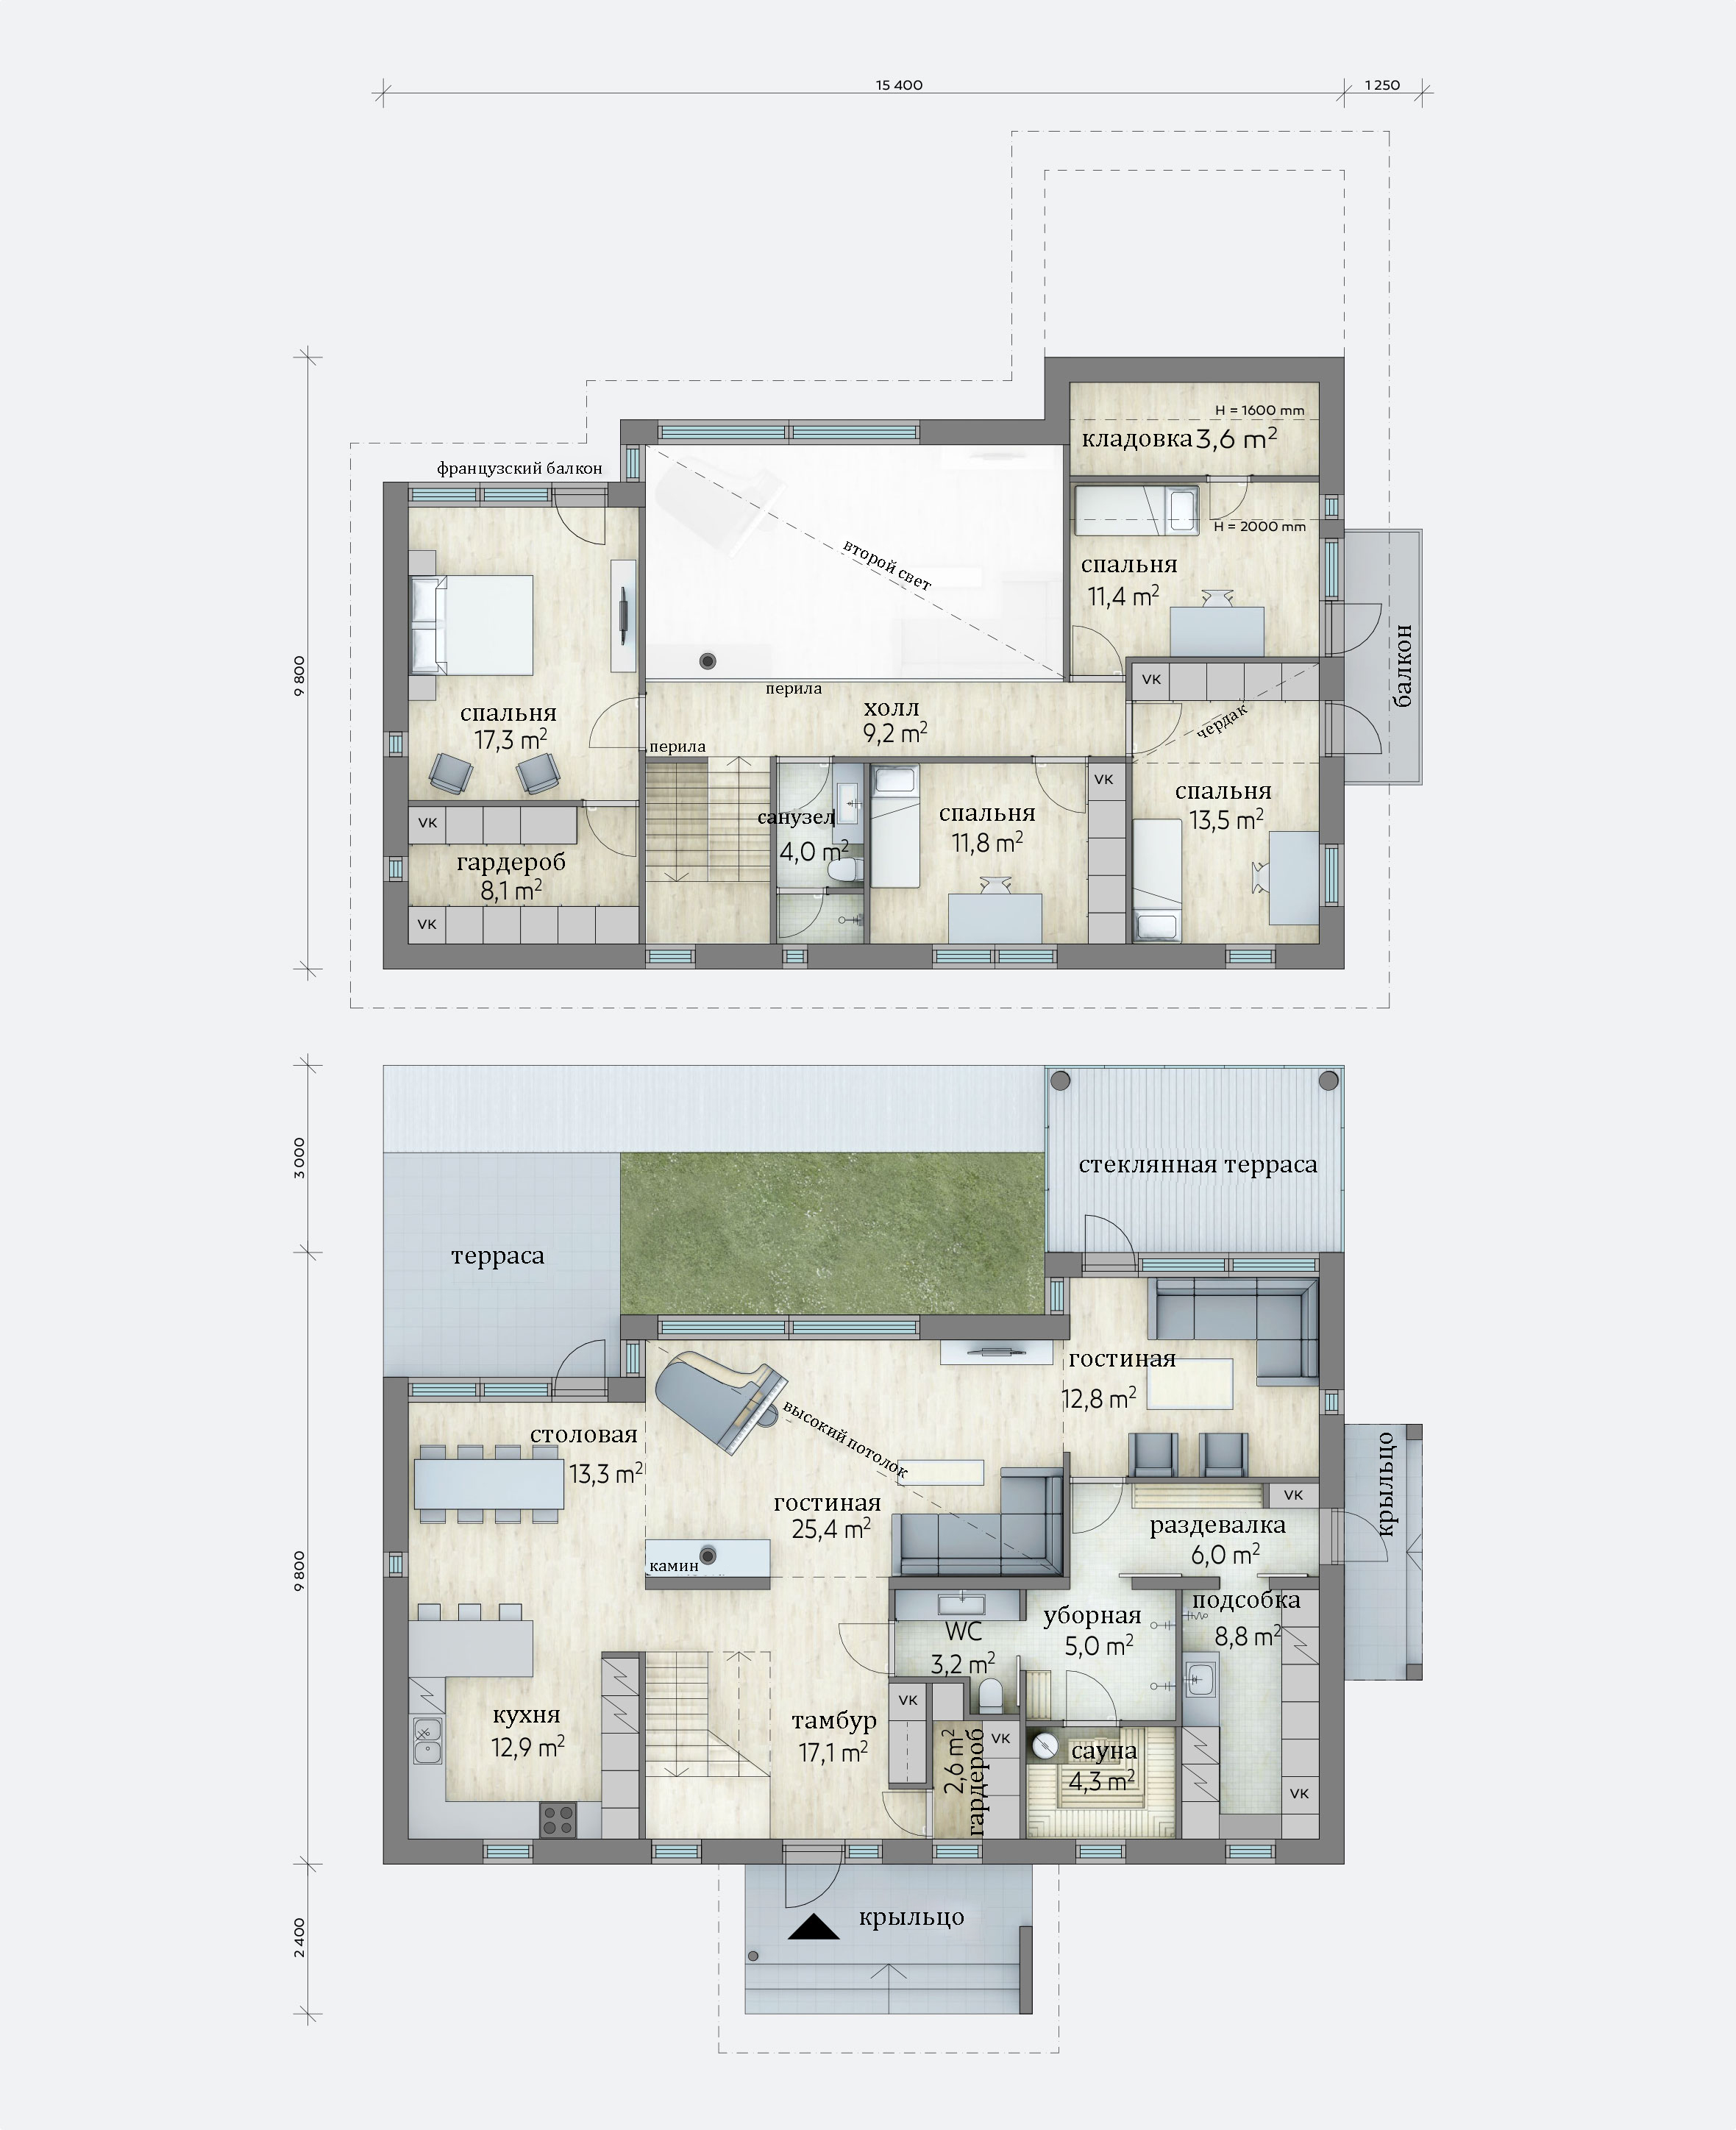 Пример планировки дома с общей зоной внизу и приватными наверху